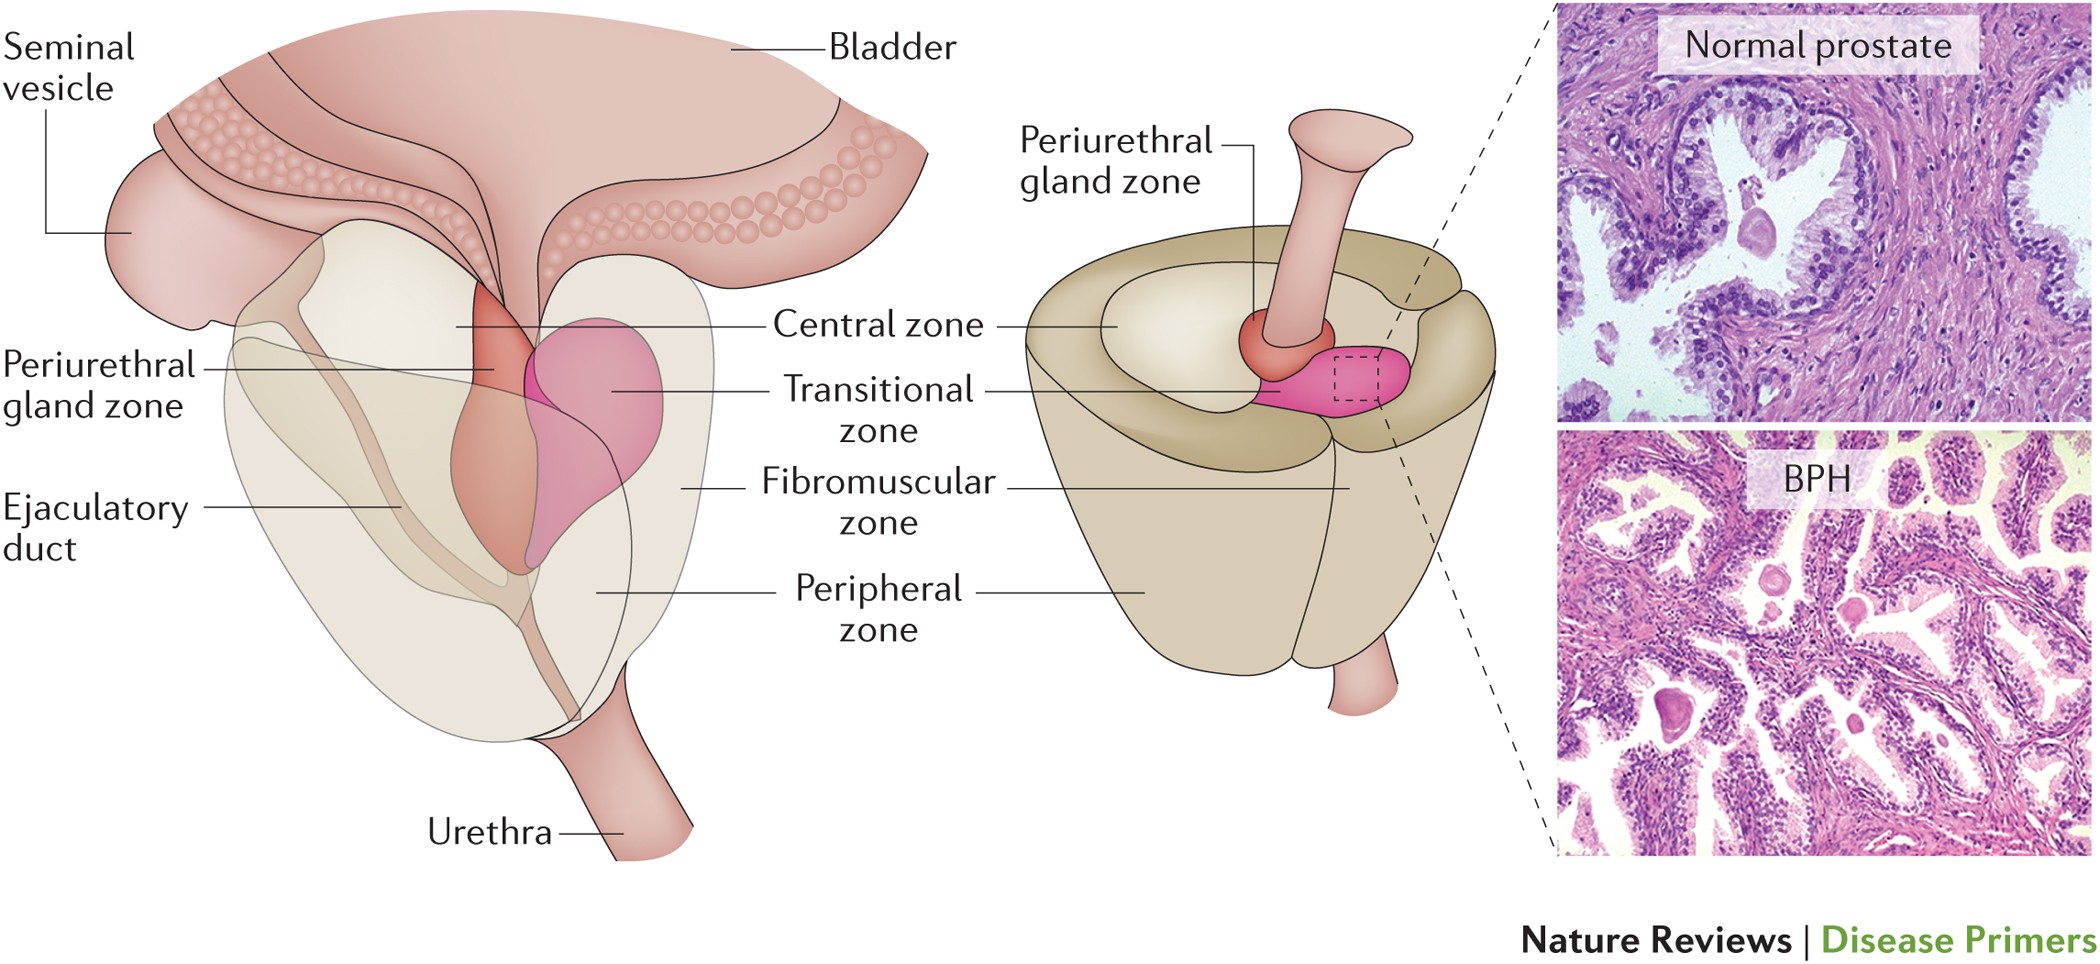 Bph vs prostate cancer presentation, Ízületi gyulladás és csontritkulás kezelés